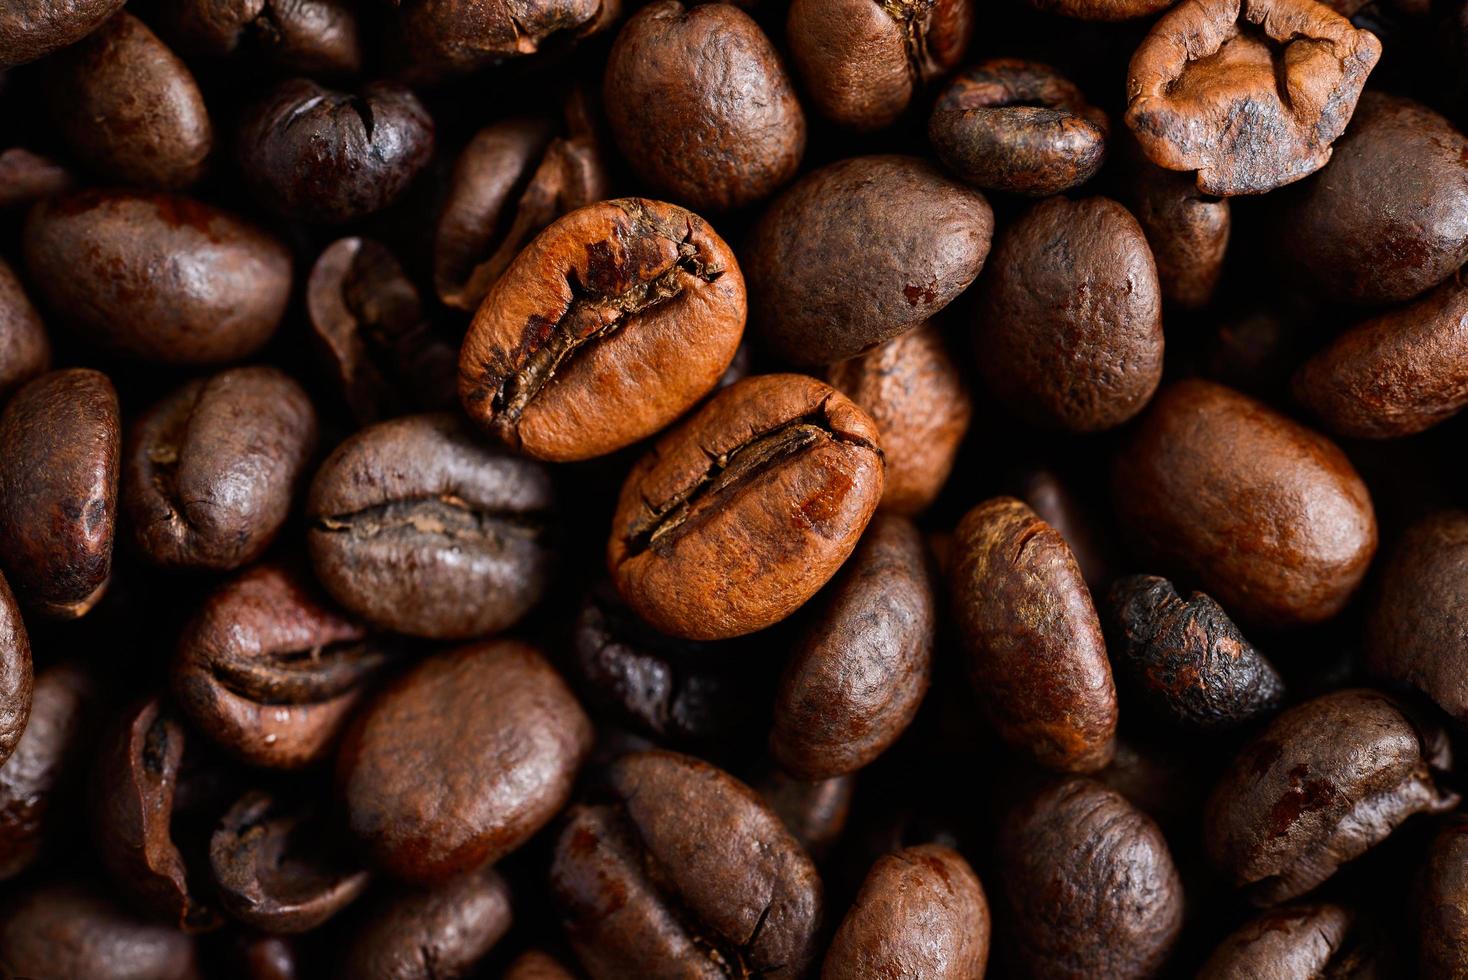 kaffebönor bakgrund foto